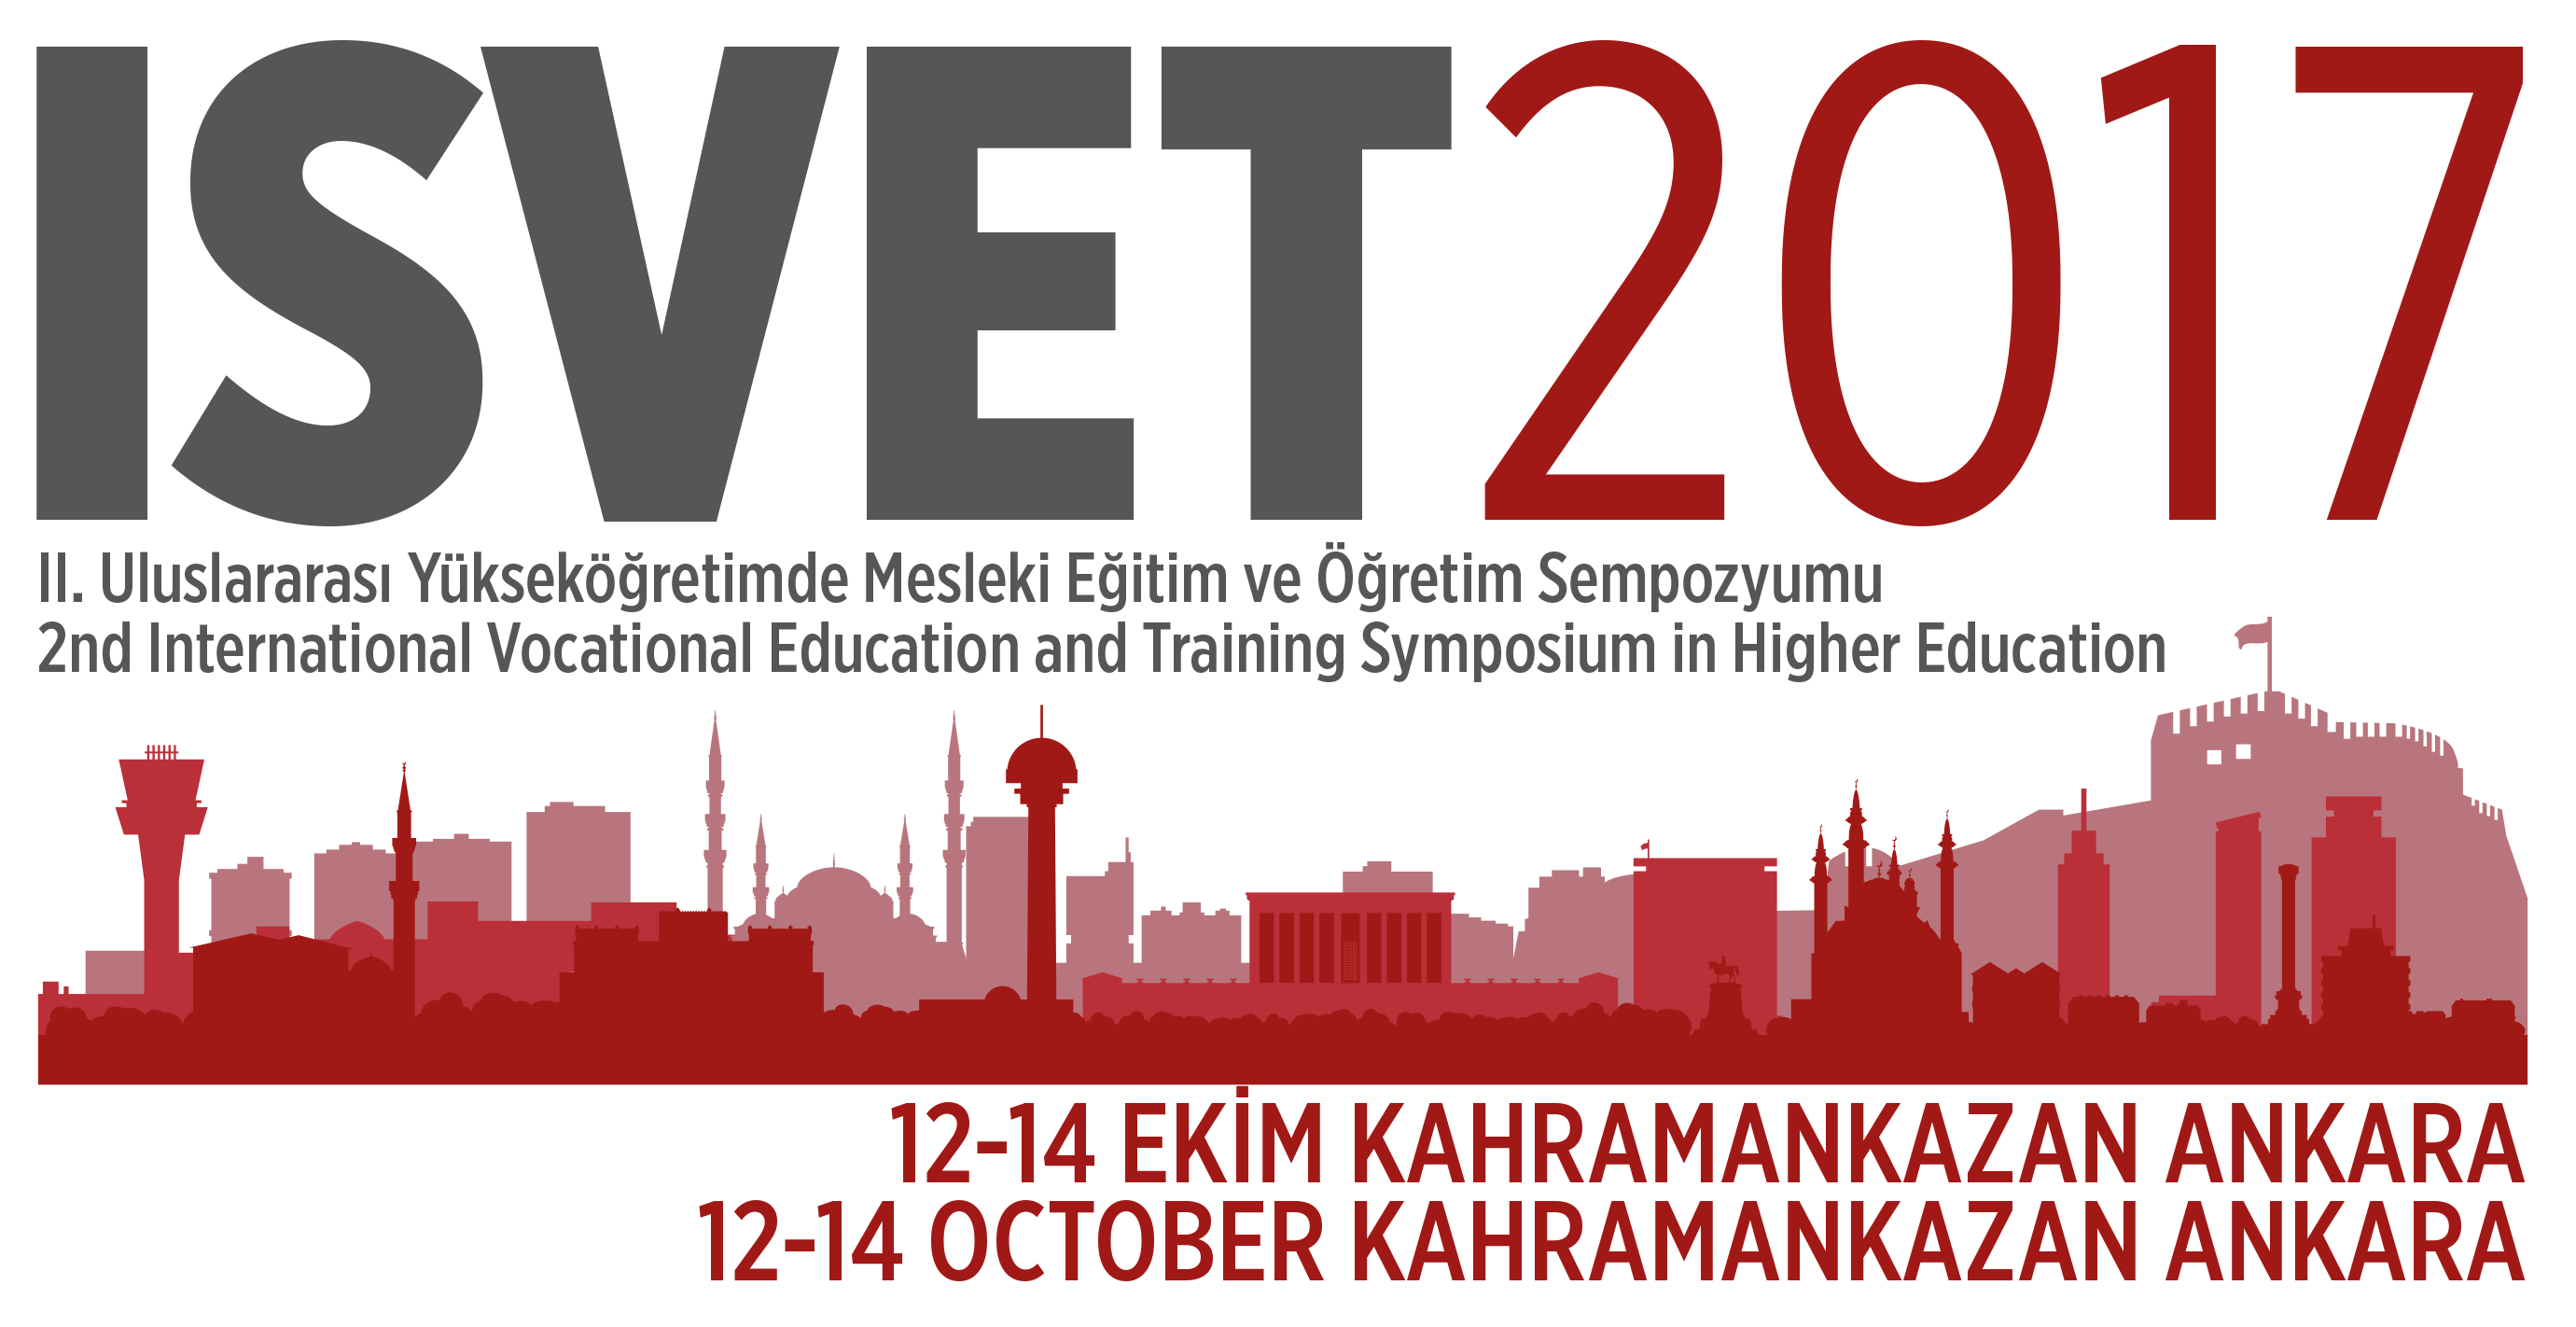 http://isvet2017.baskent.edu.tr/wp-content/uploads/isvet2017_3-4.png